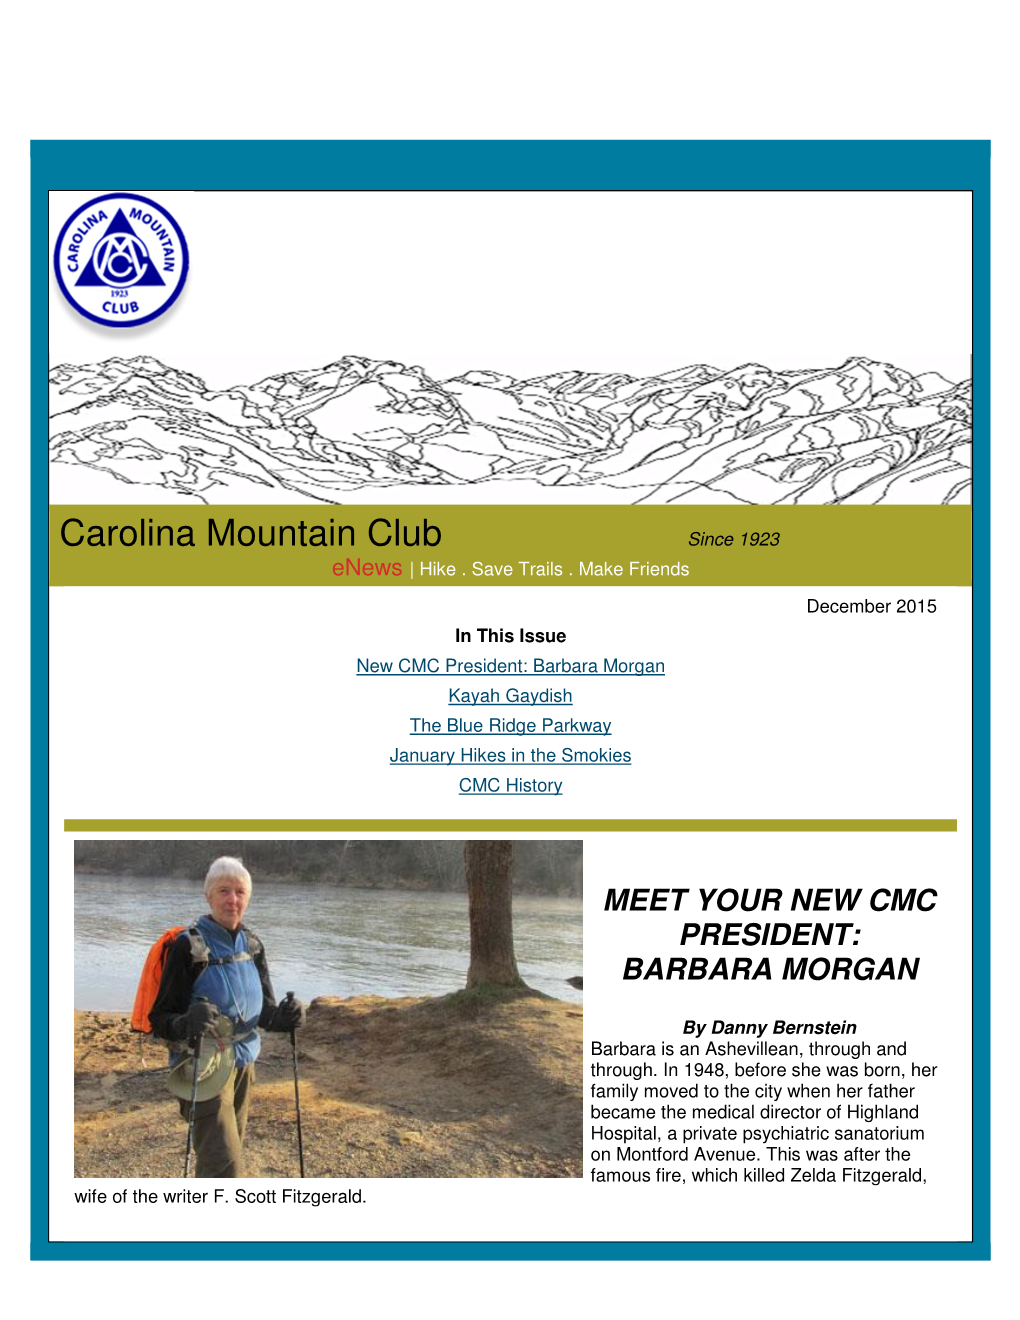 Carolina Mountain Club Since 1923 Enews | Hike